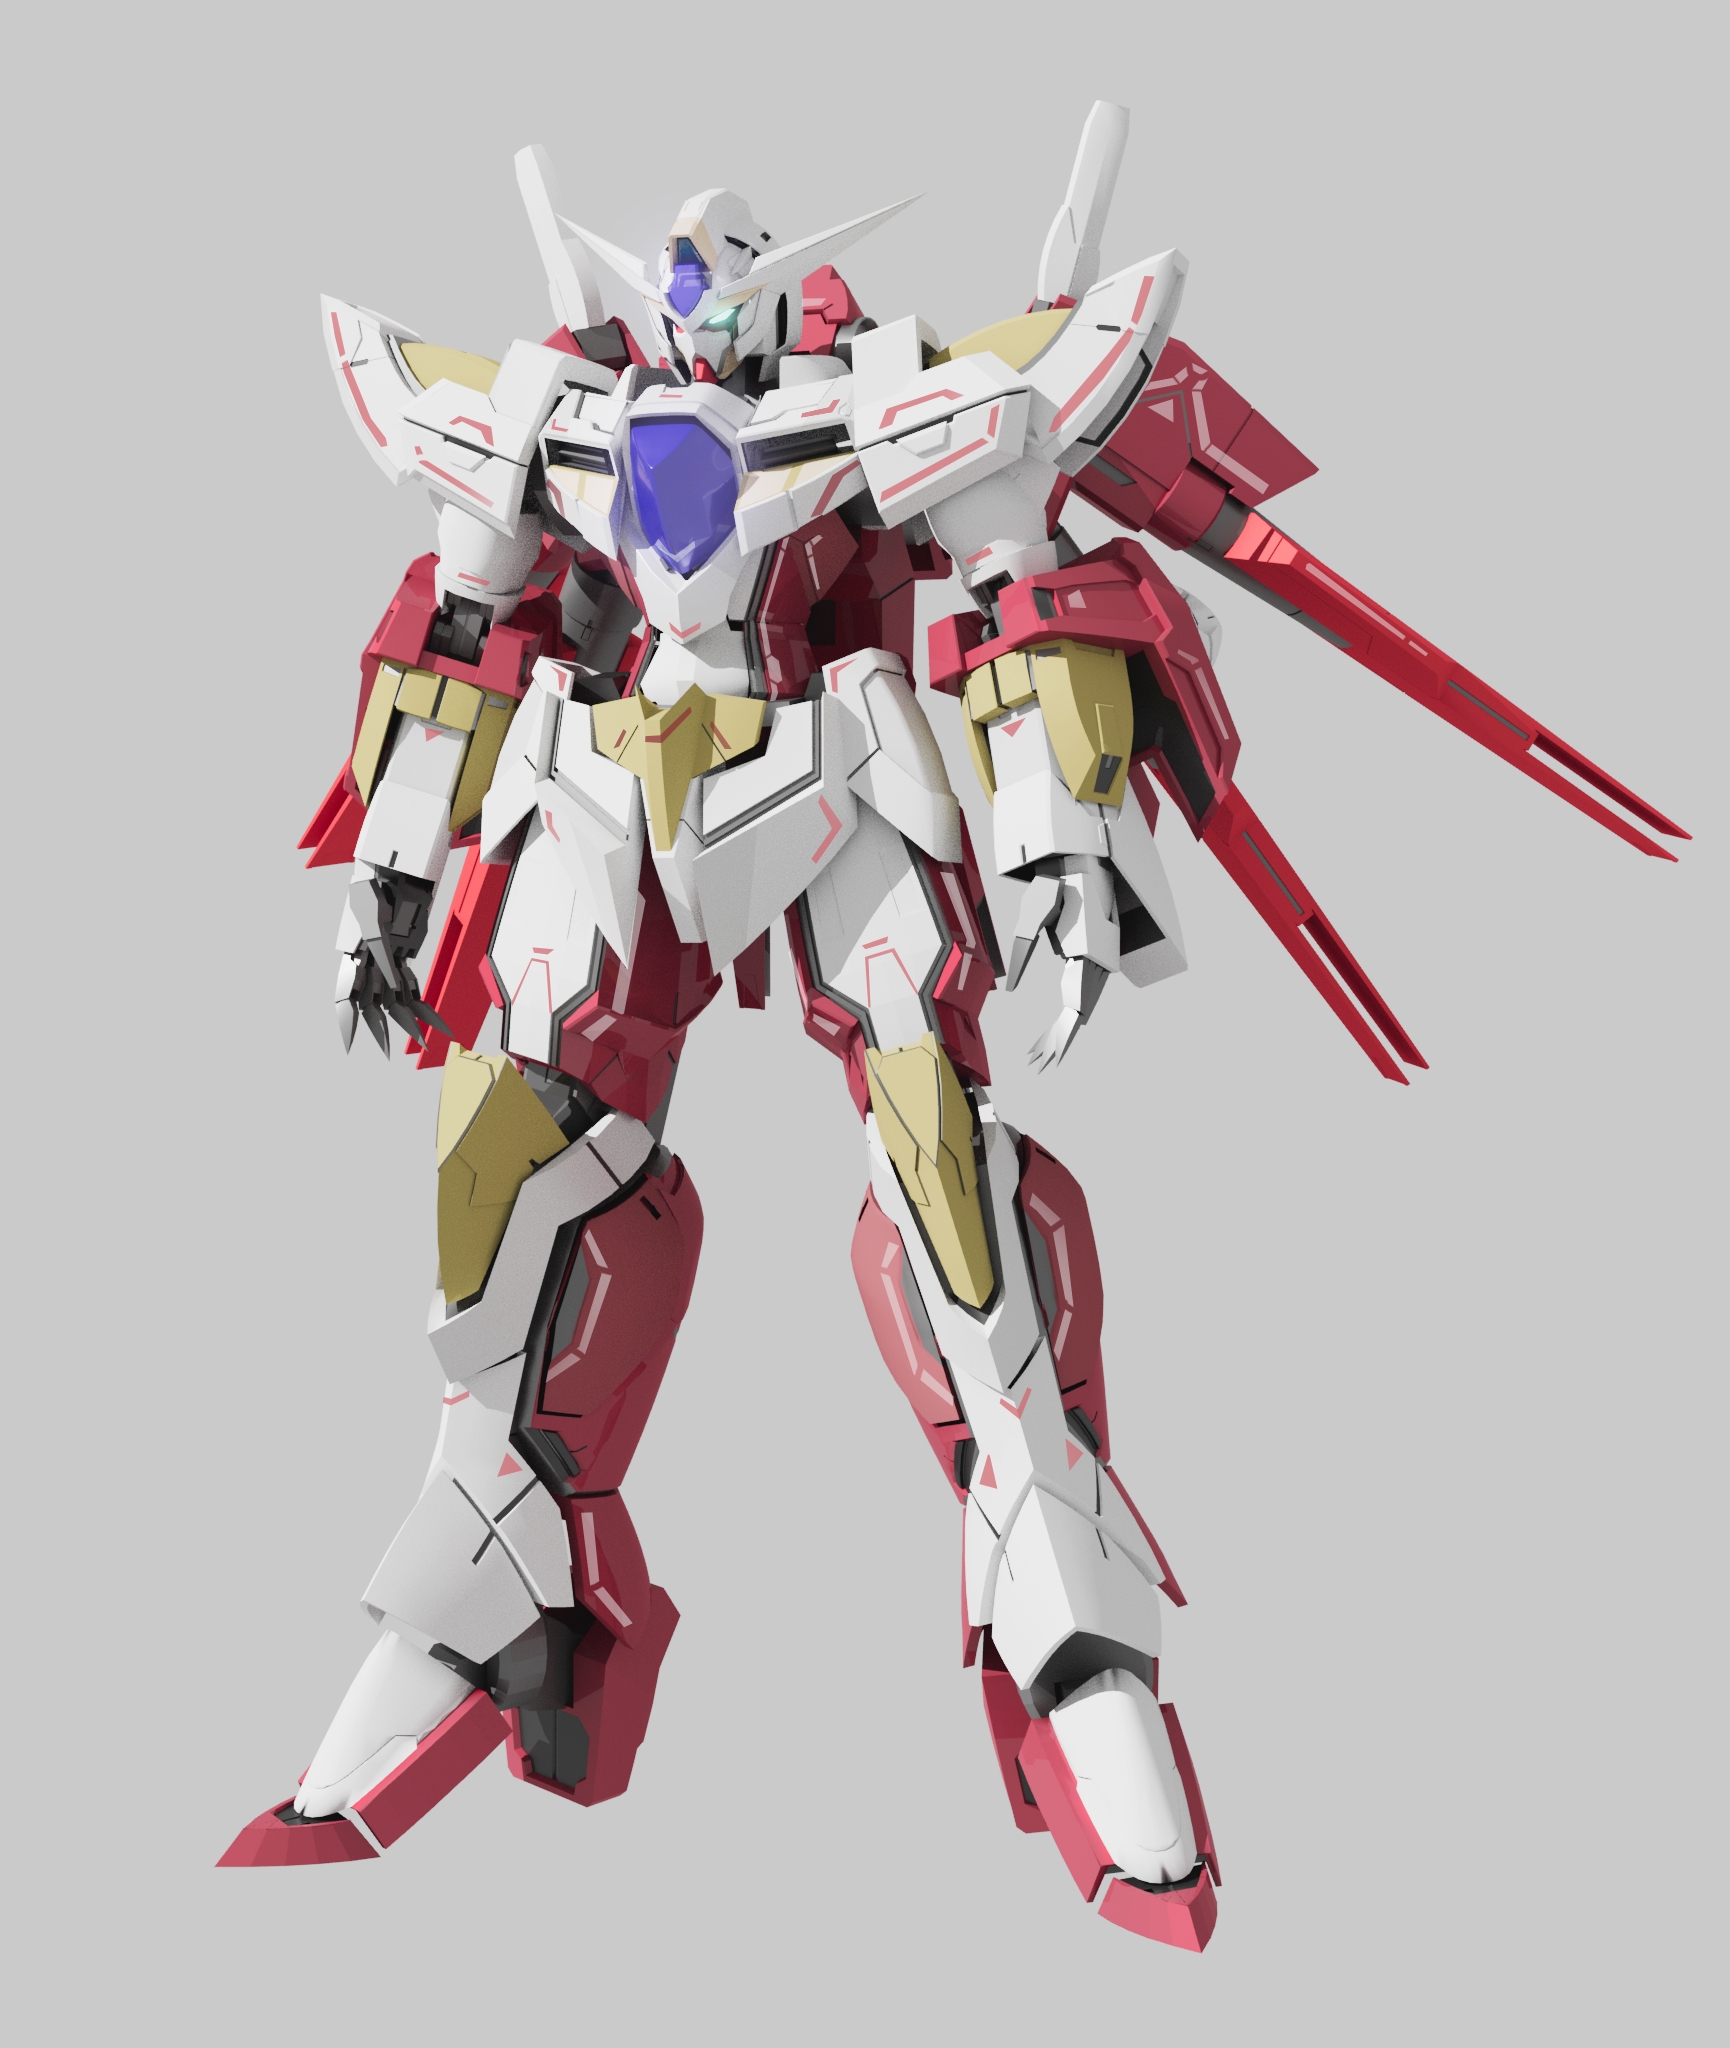 Anime 1730x2048 Reborns Gundam anime mechs Super Robot Taisen Gundam Mobile Suit Gundam 00 artwork digital art fan art